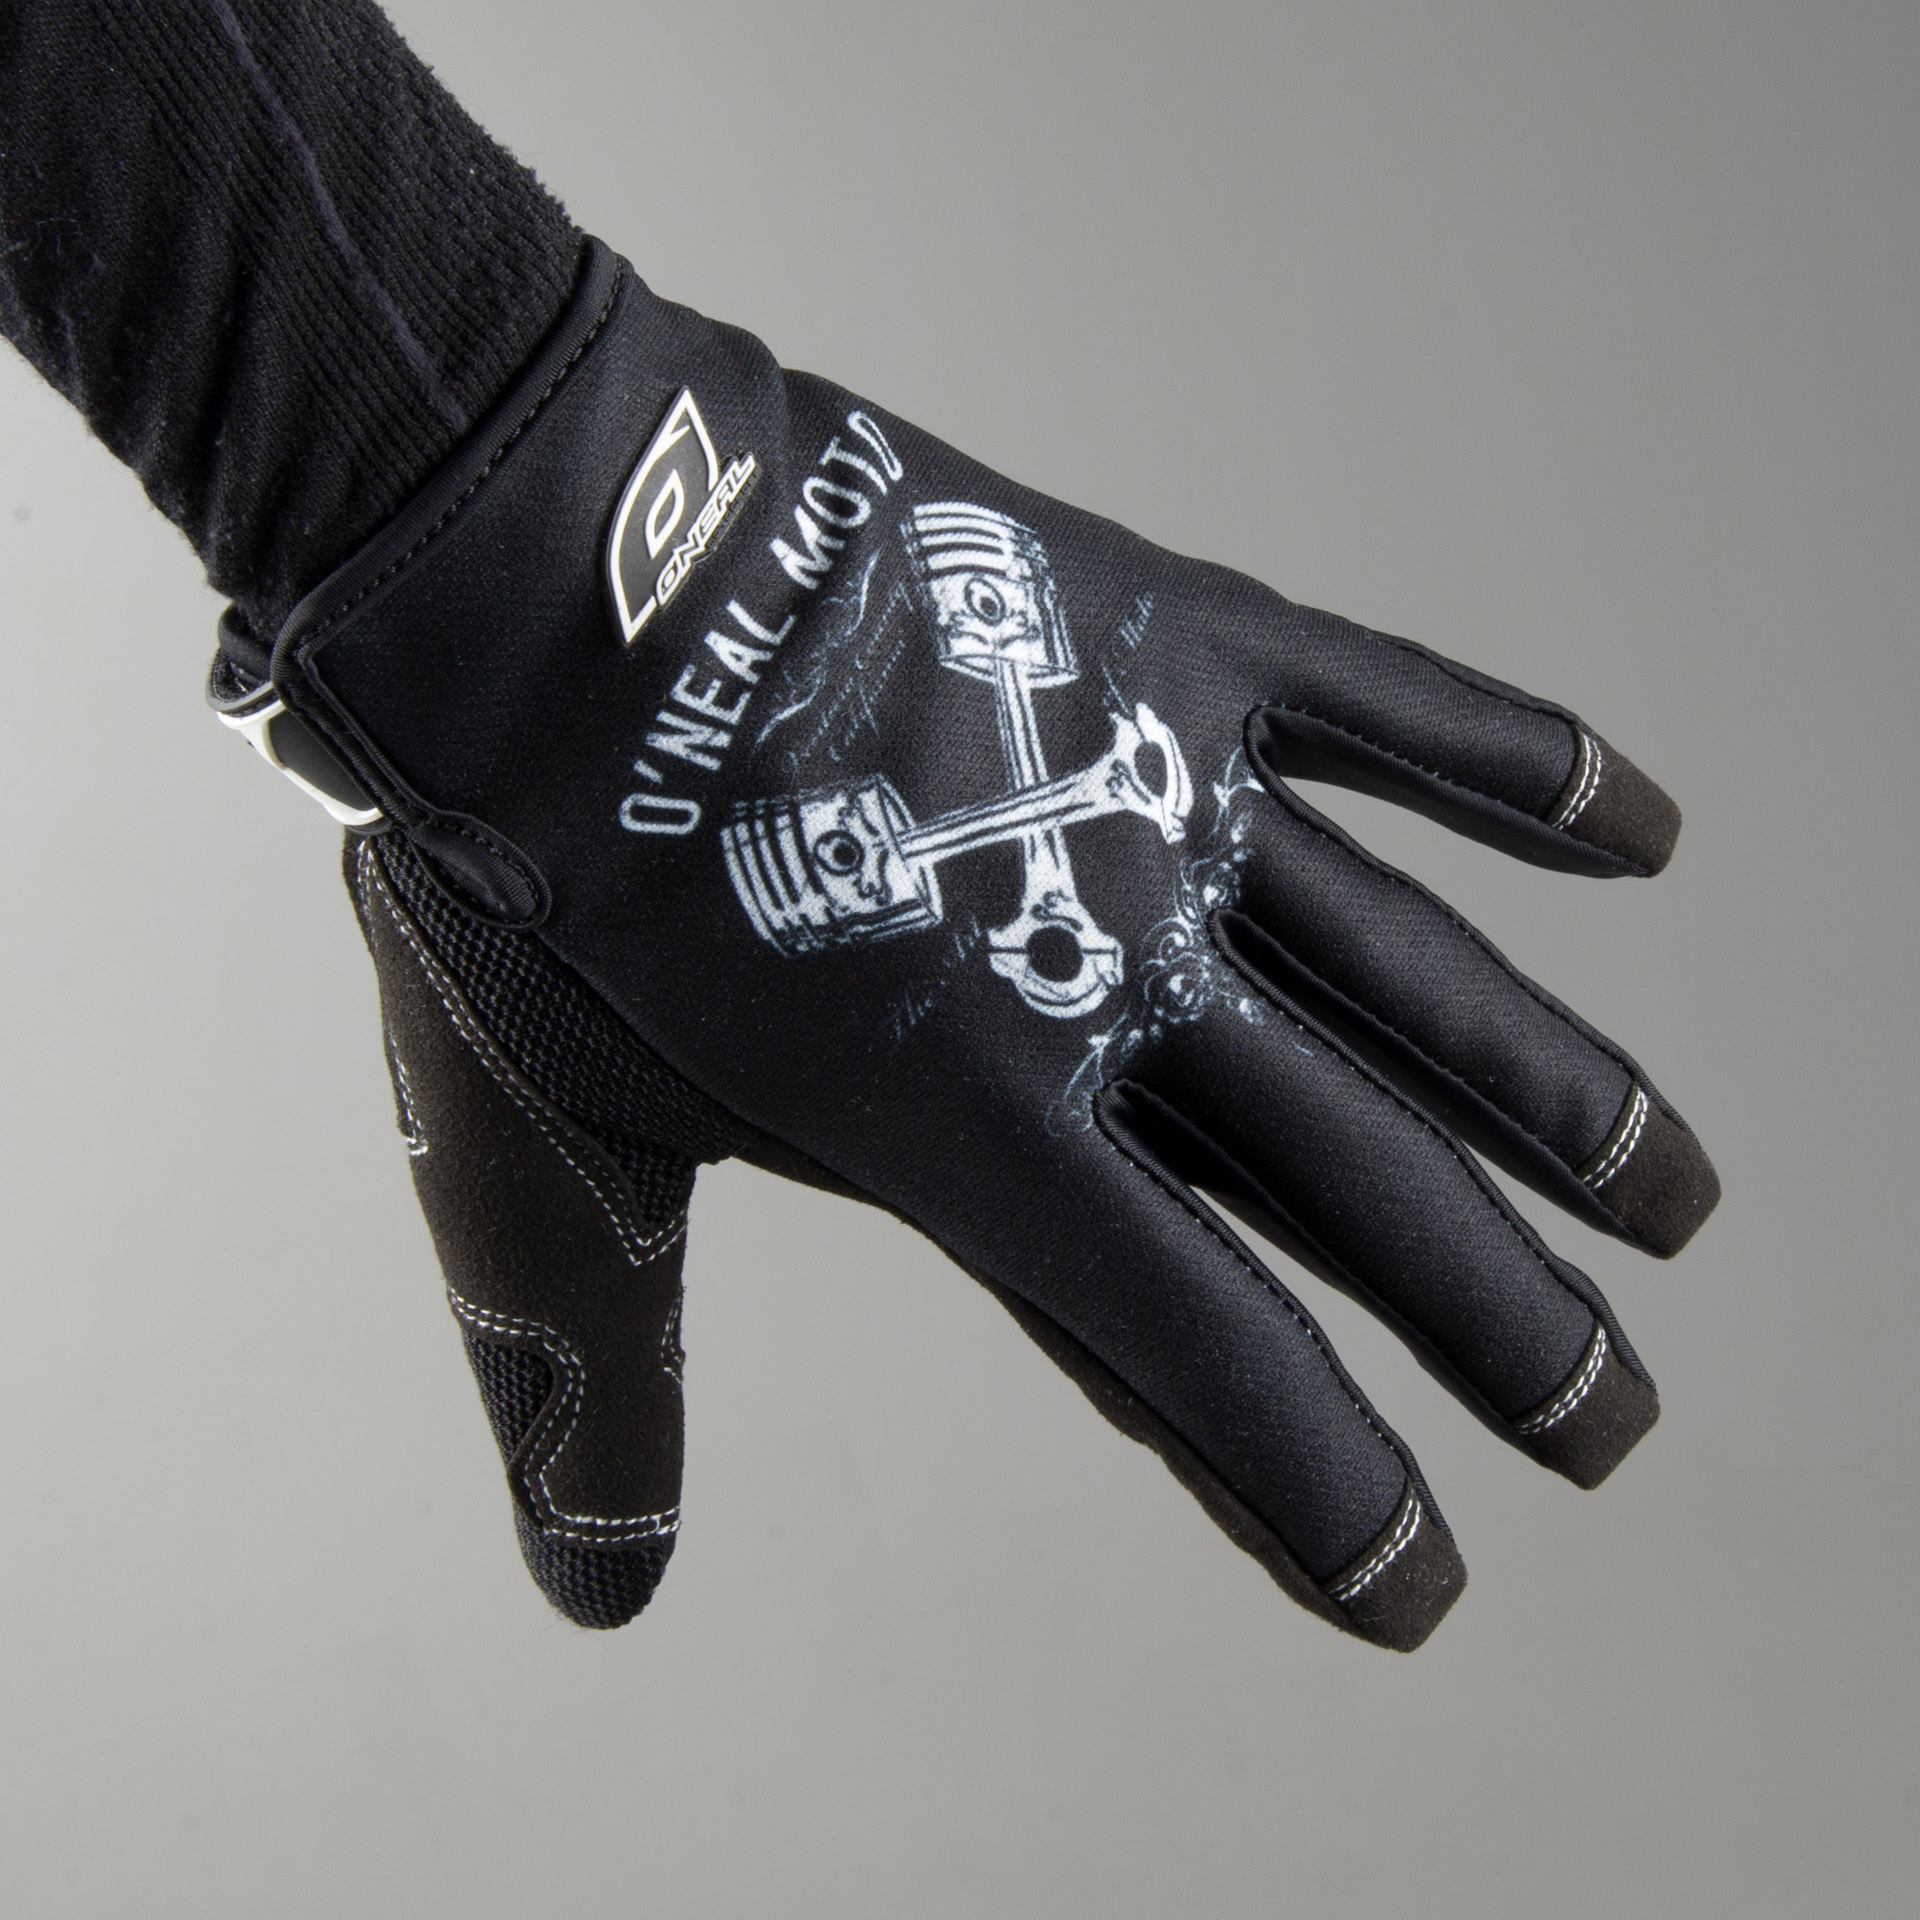 ONeal Pistons Jump Bike Gloves Black//White